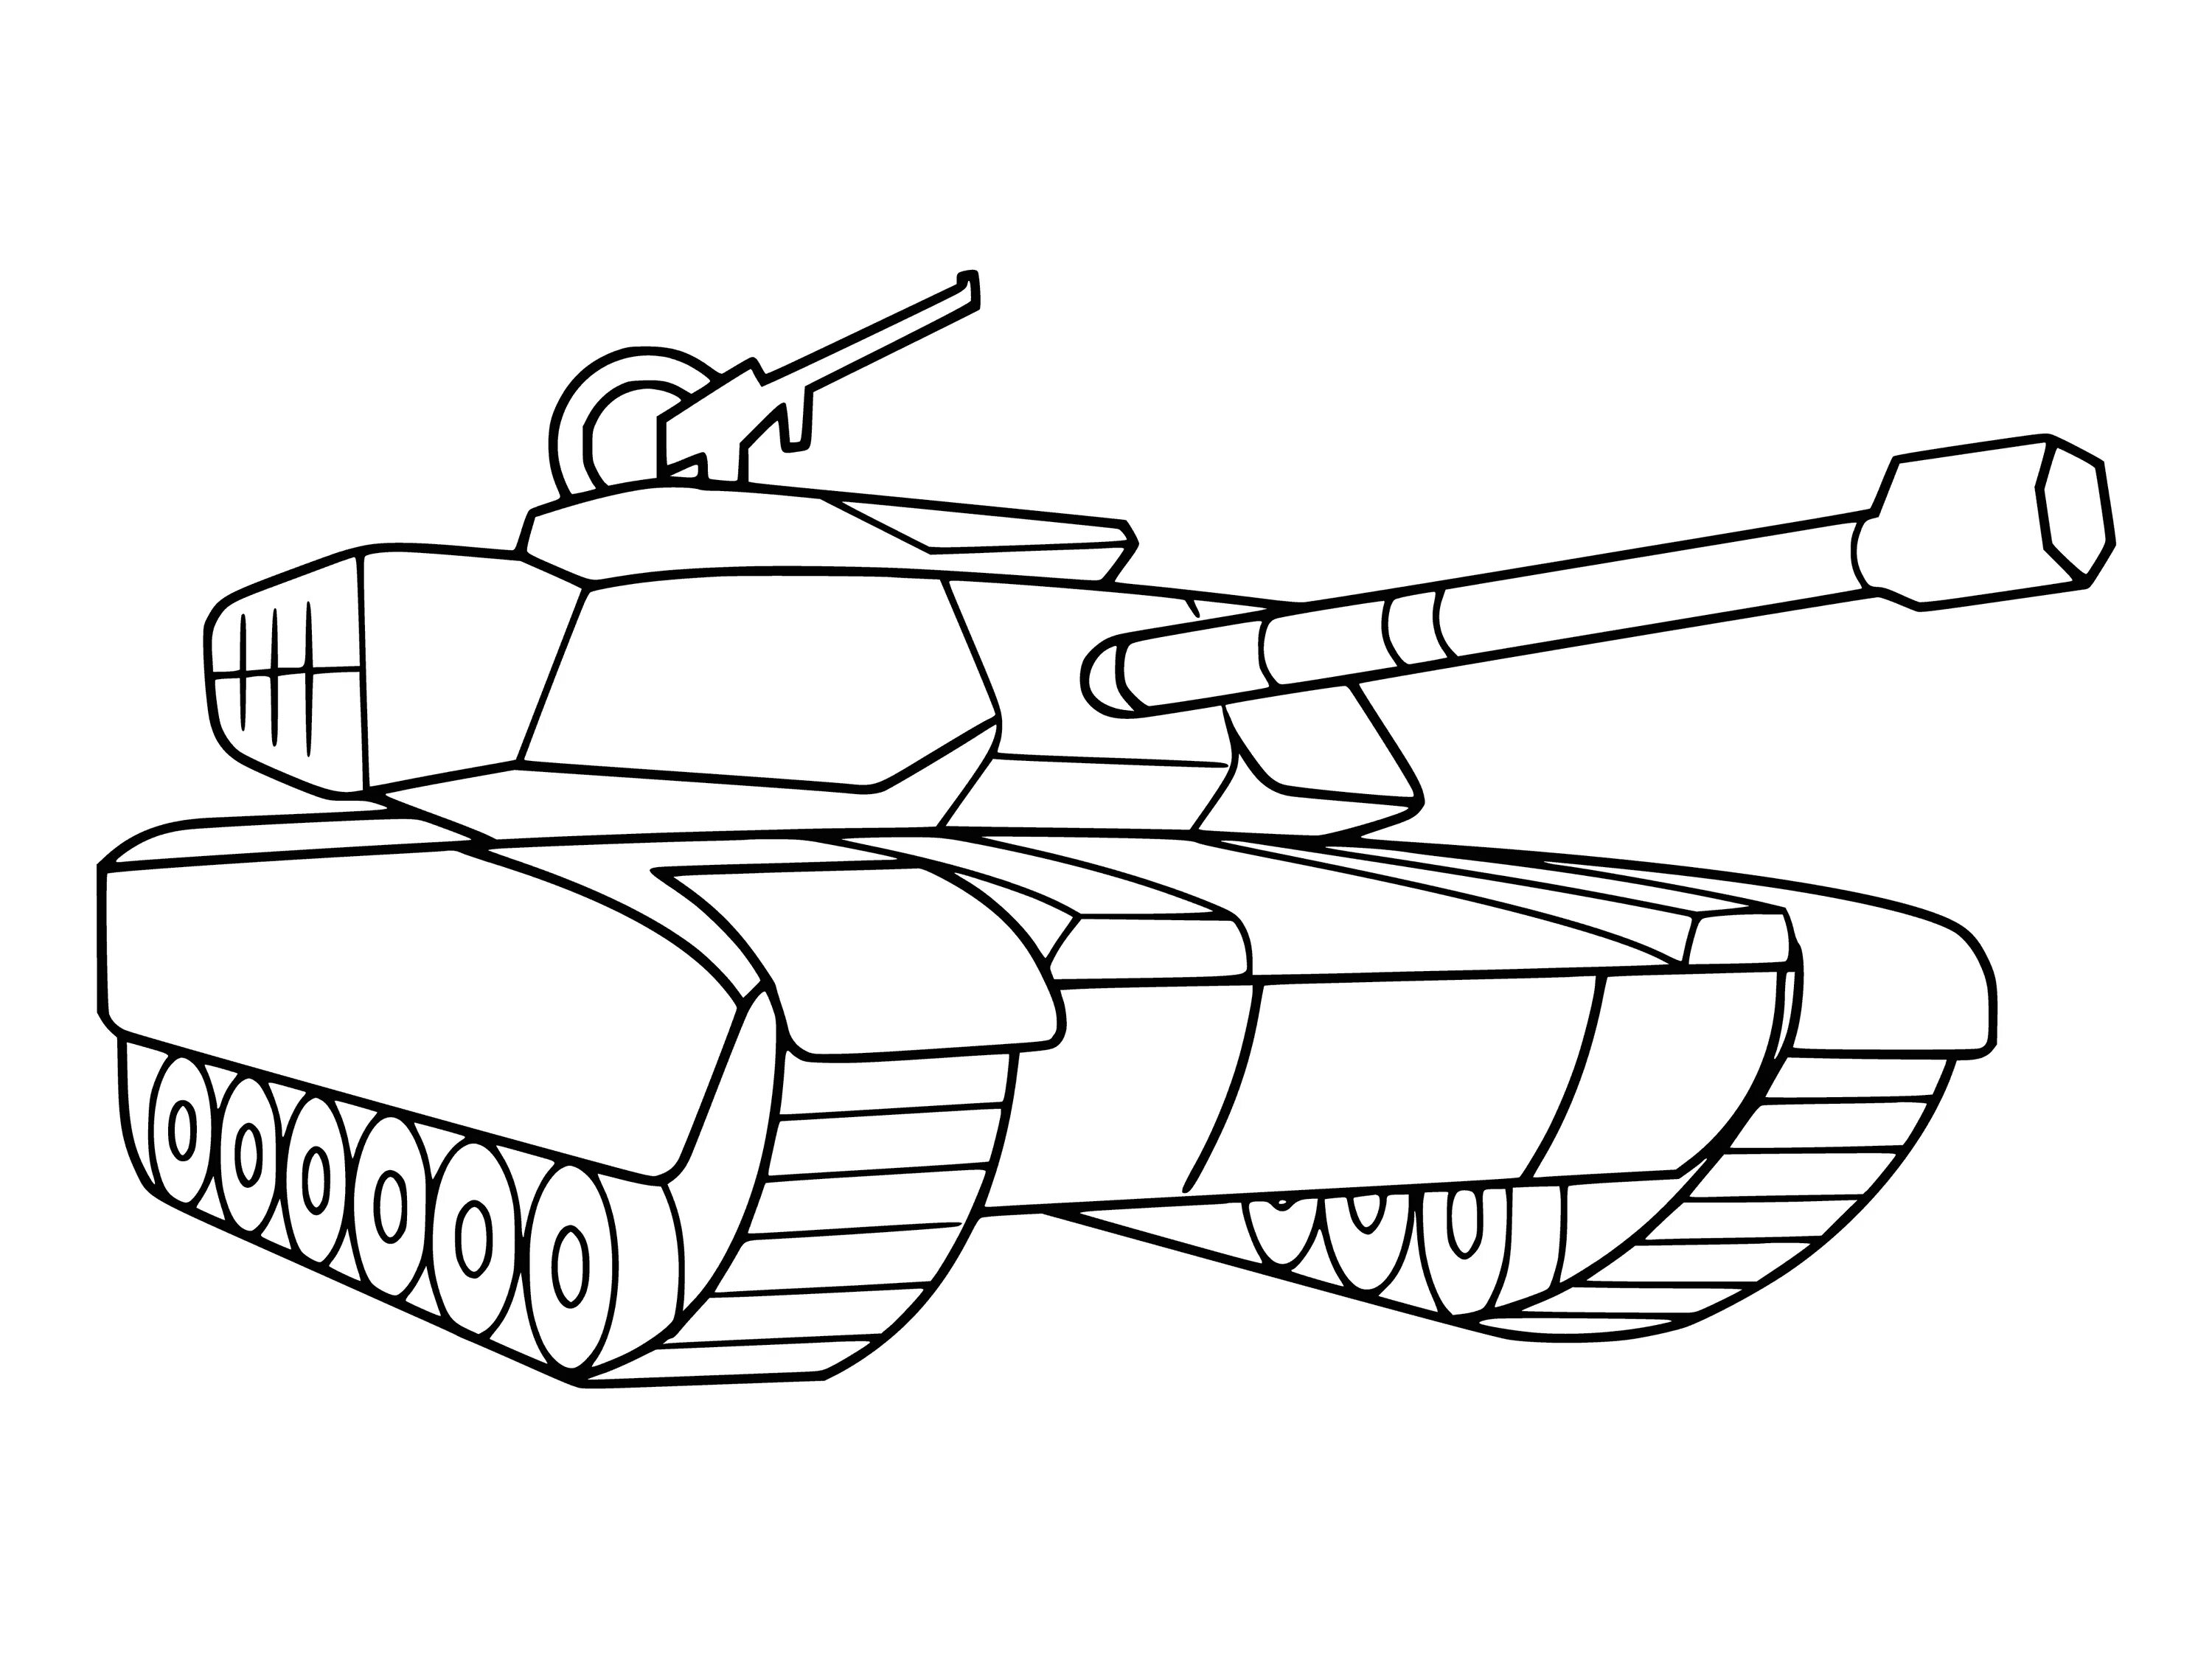 Привлекательная раскраска русских танков